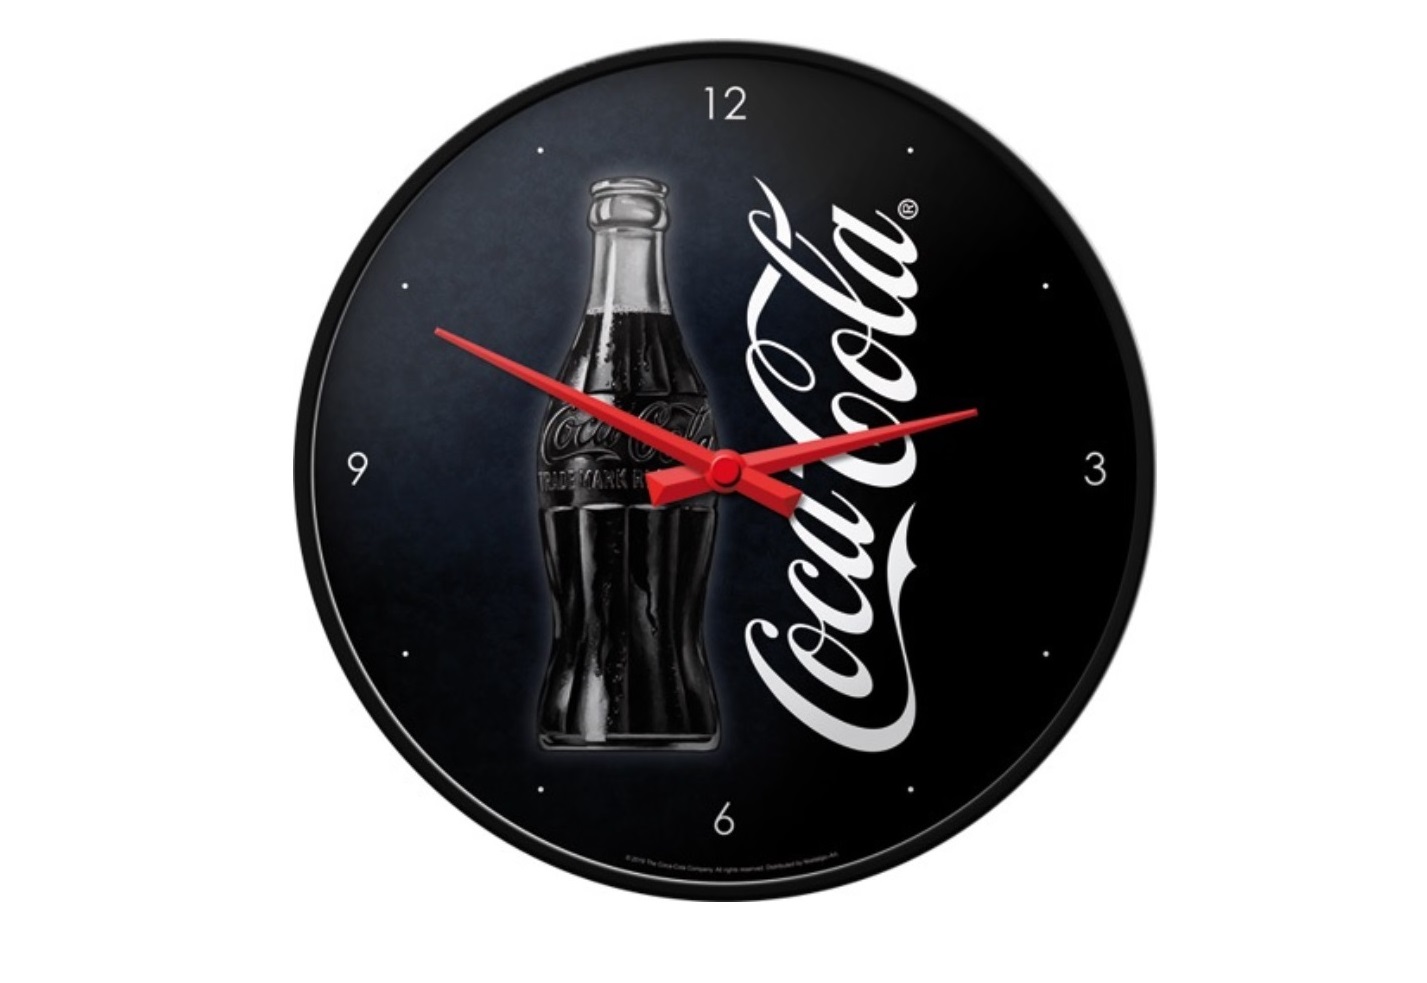 Wandklok Coca-Cola Delicious en Refreshing